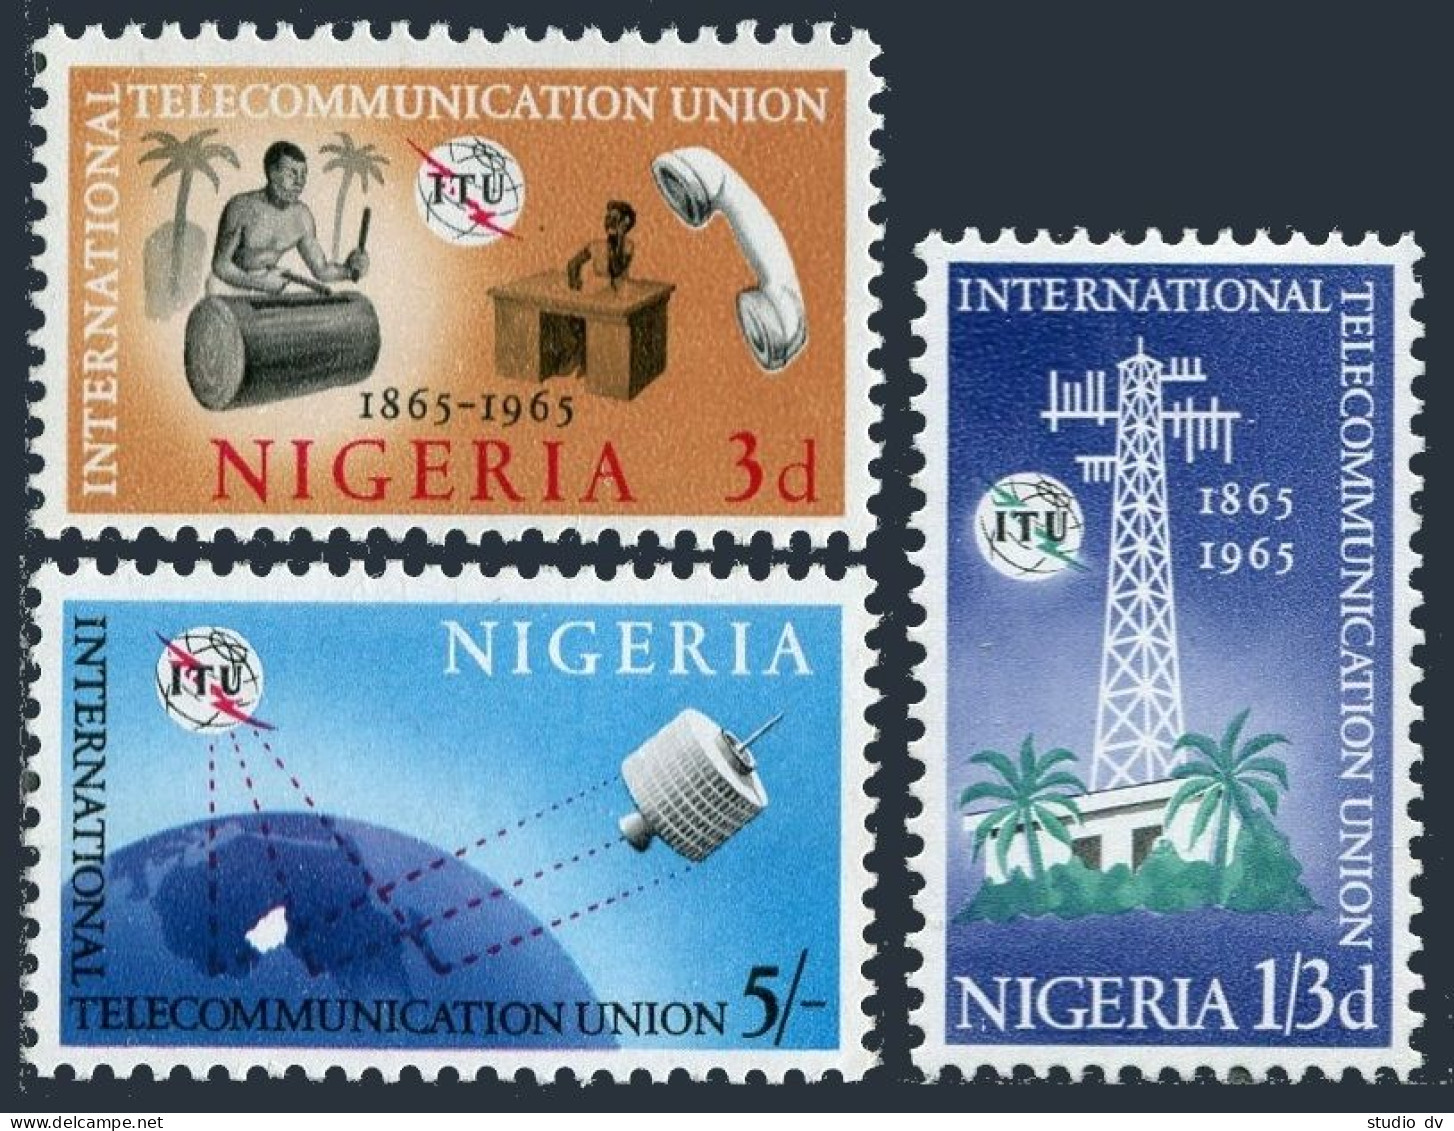 Nigeria 175-177, MNH. Michel 166-168. ITU-100,1965. Drummer,Satellite,Telephone. - Niger (1960-...)